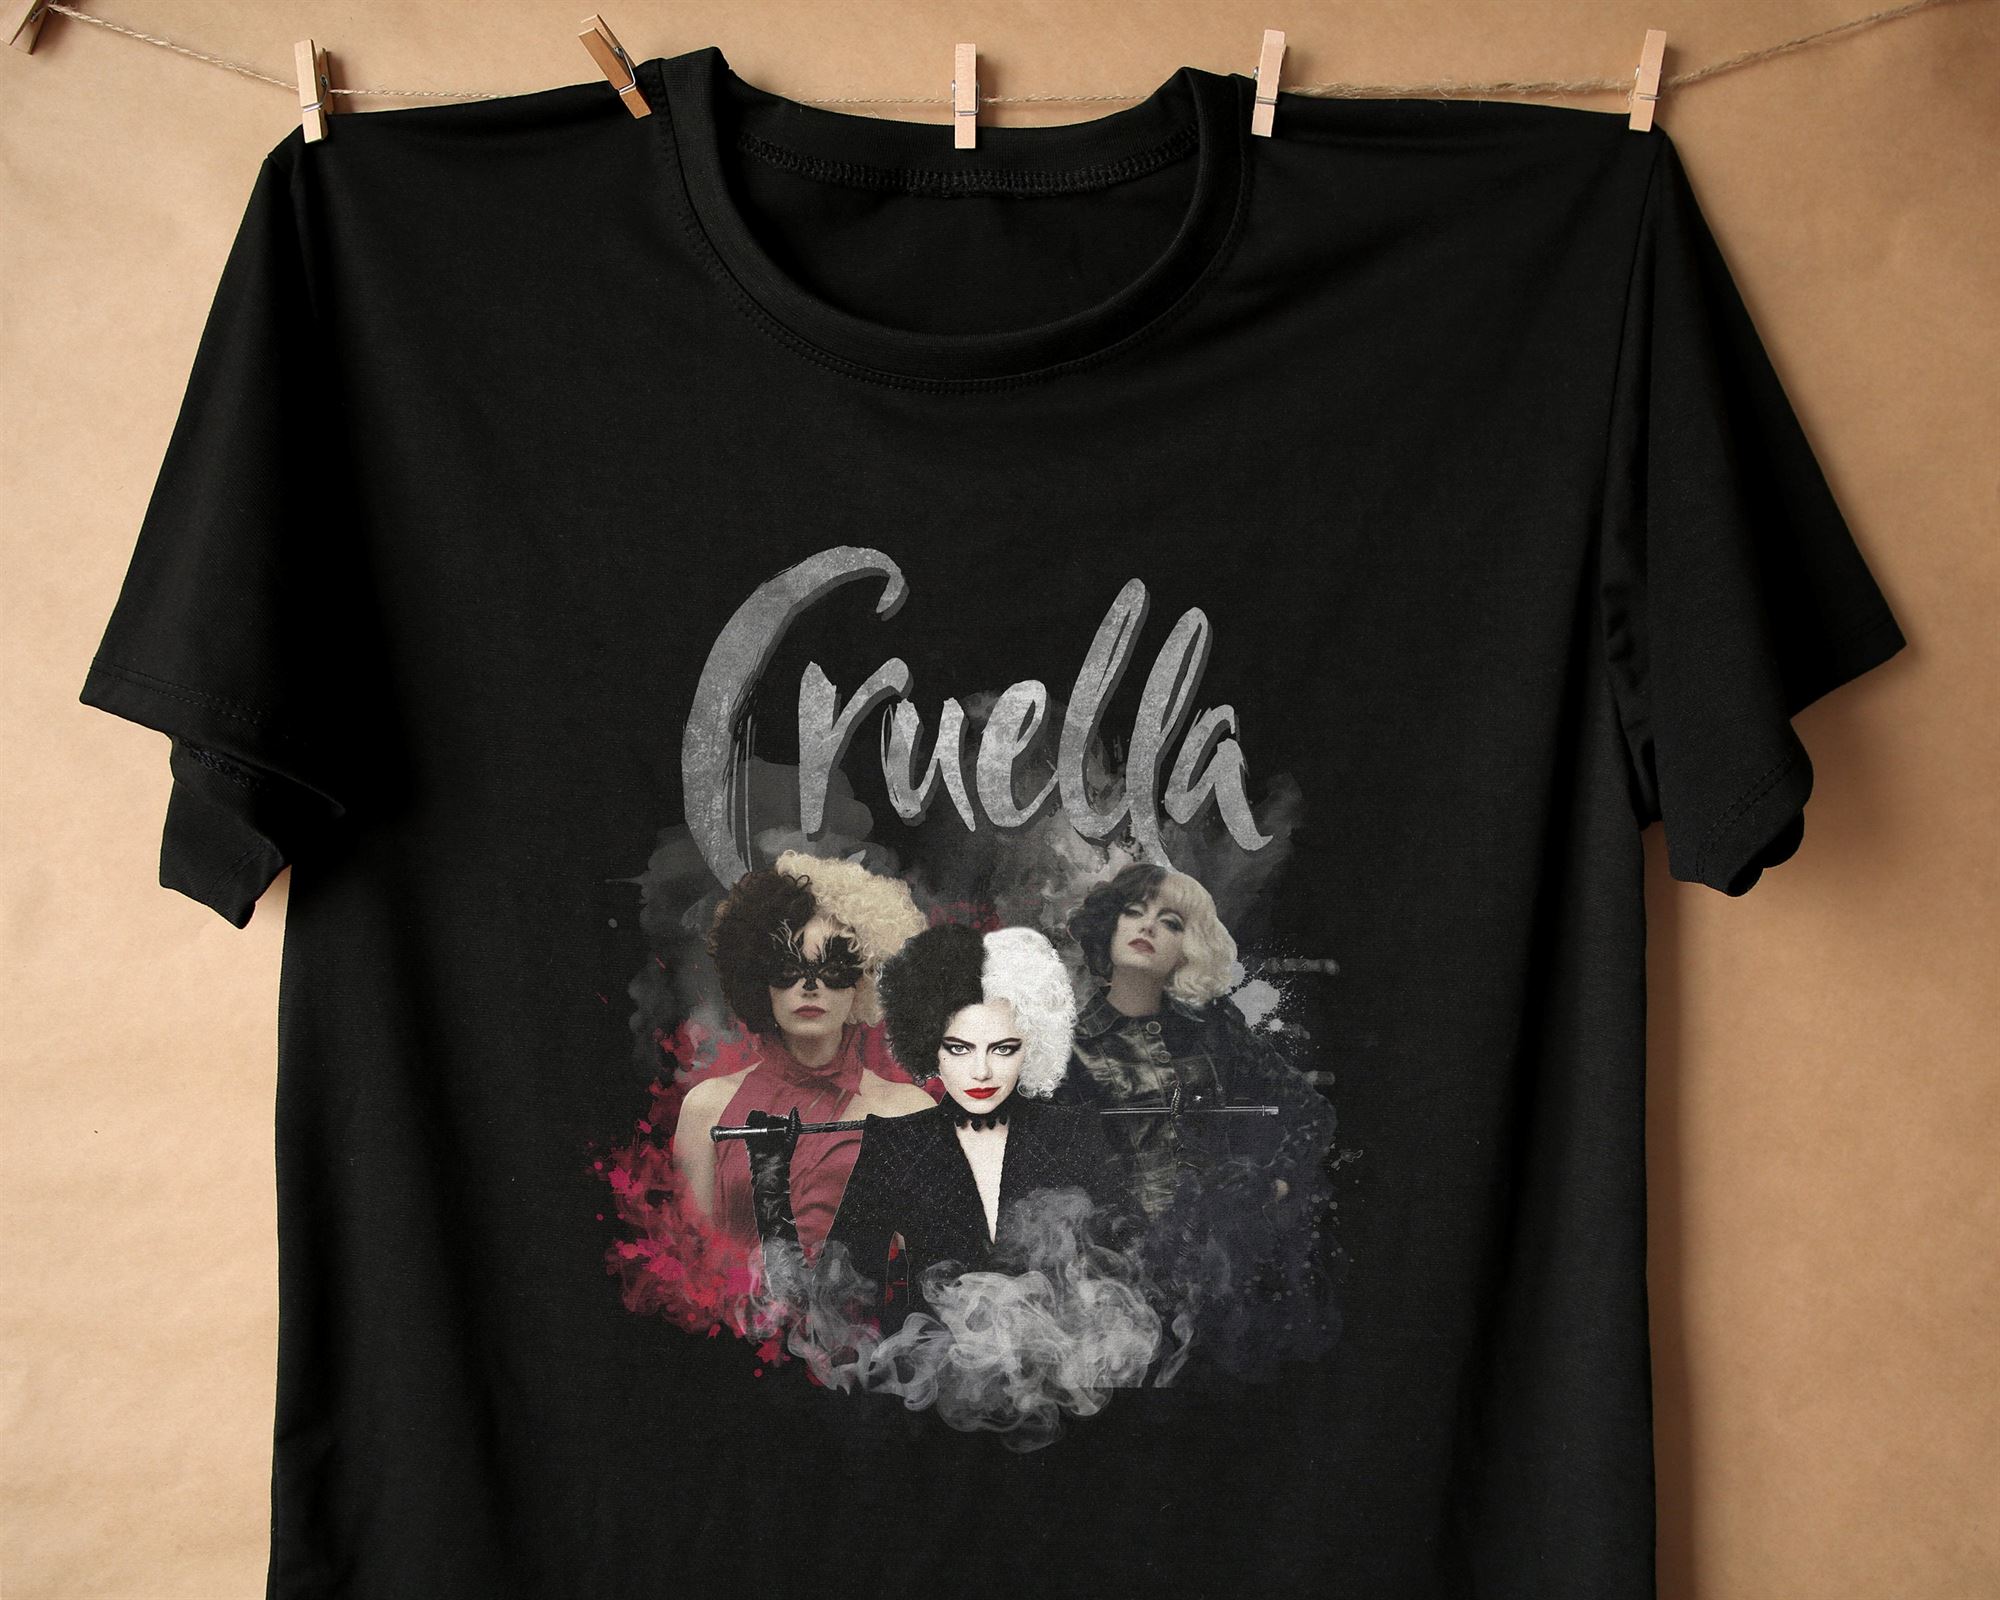 2021 Cruella De Vil Fan Classic Shirtcruella De Vil Shirt Cruella 101 Dalmations Cruella Movie Shirt Cruella De Vil 62irt